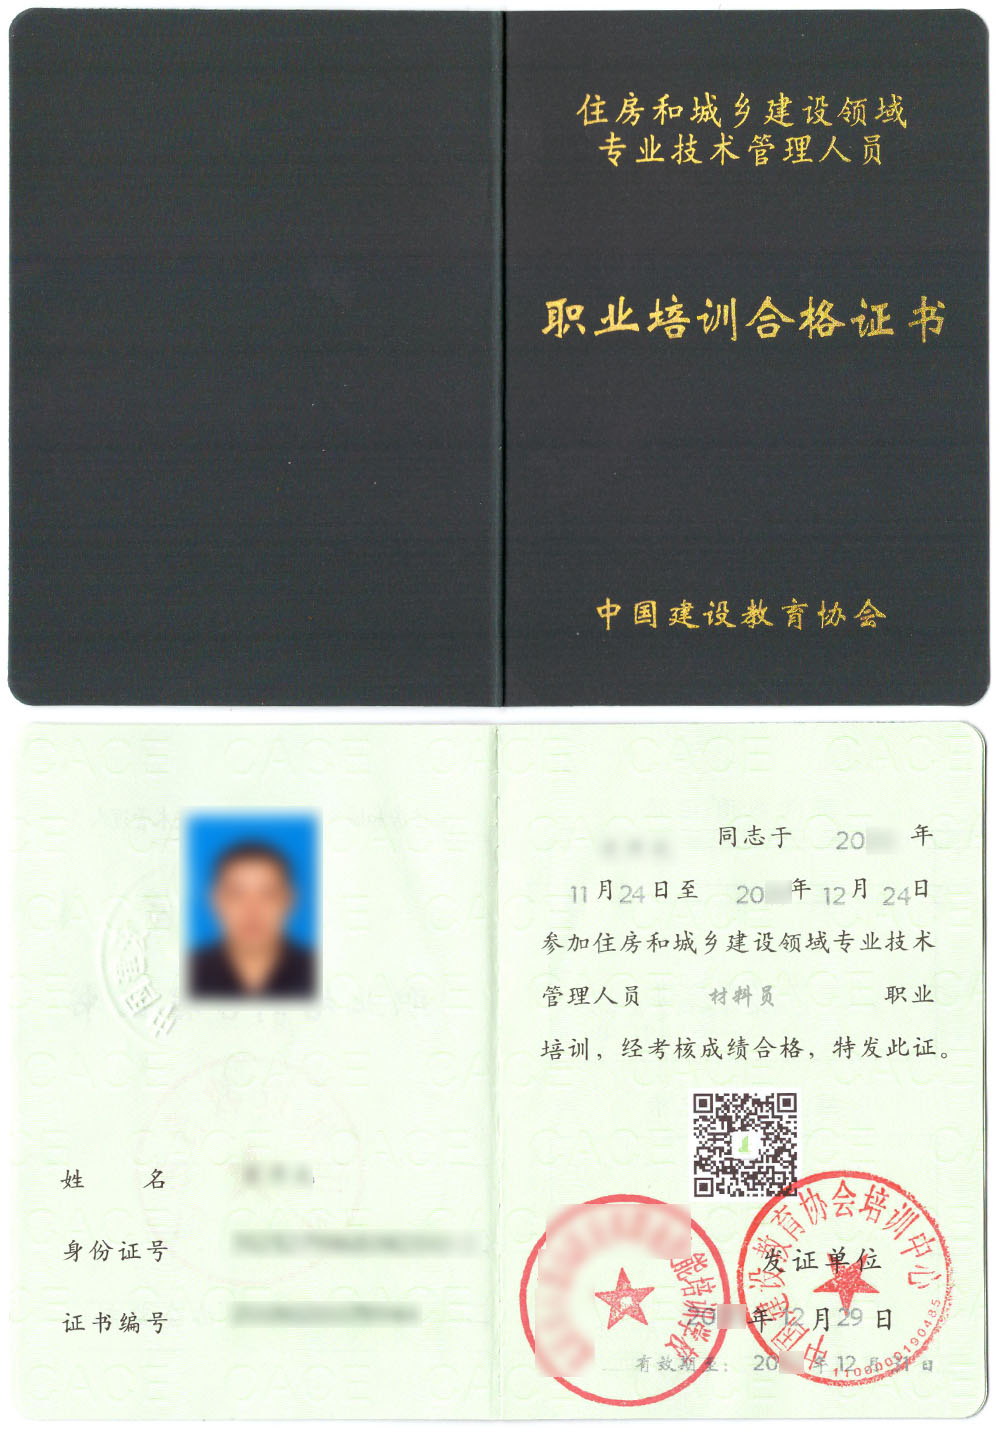 中国建设教育协会 住房和城乡建设领域专业技术管理人员职业培训合格证书 材料员证书样本